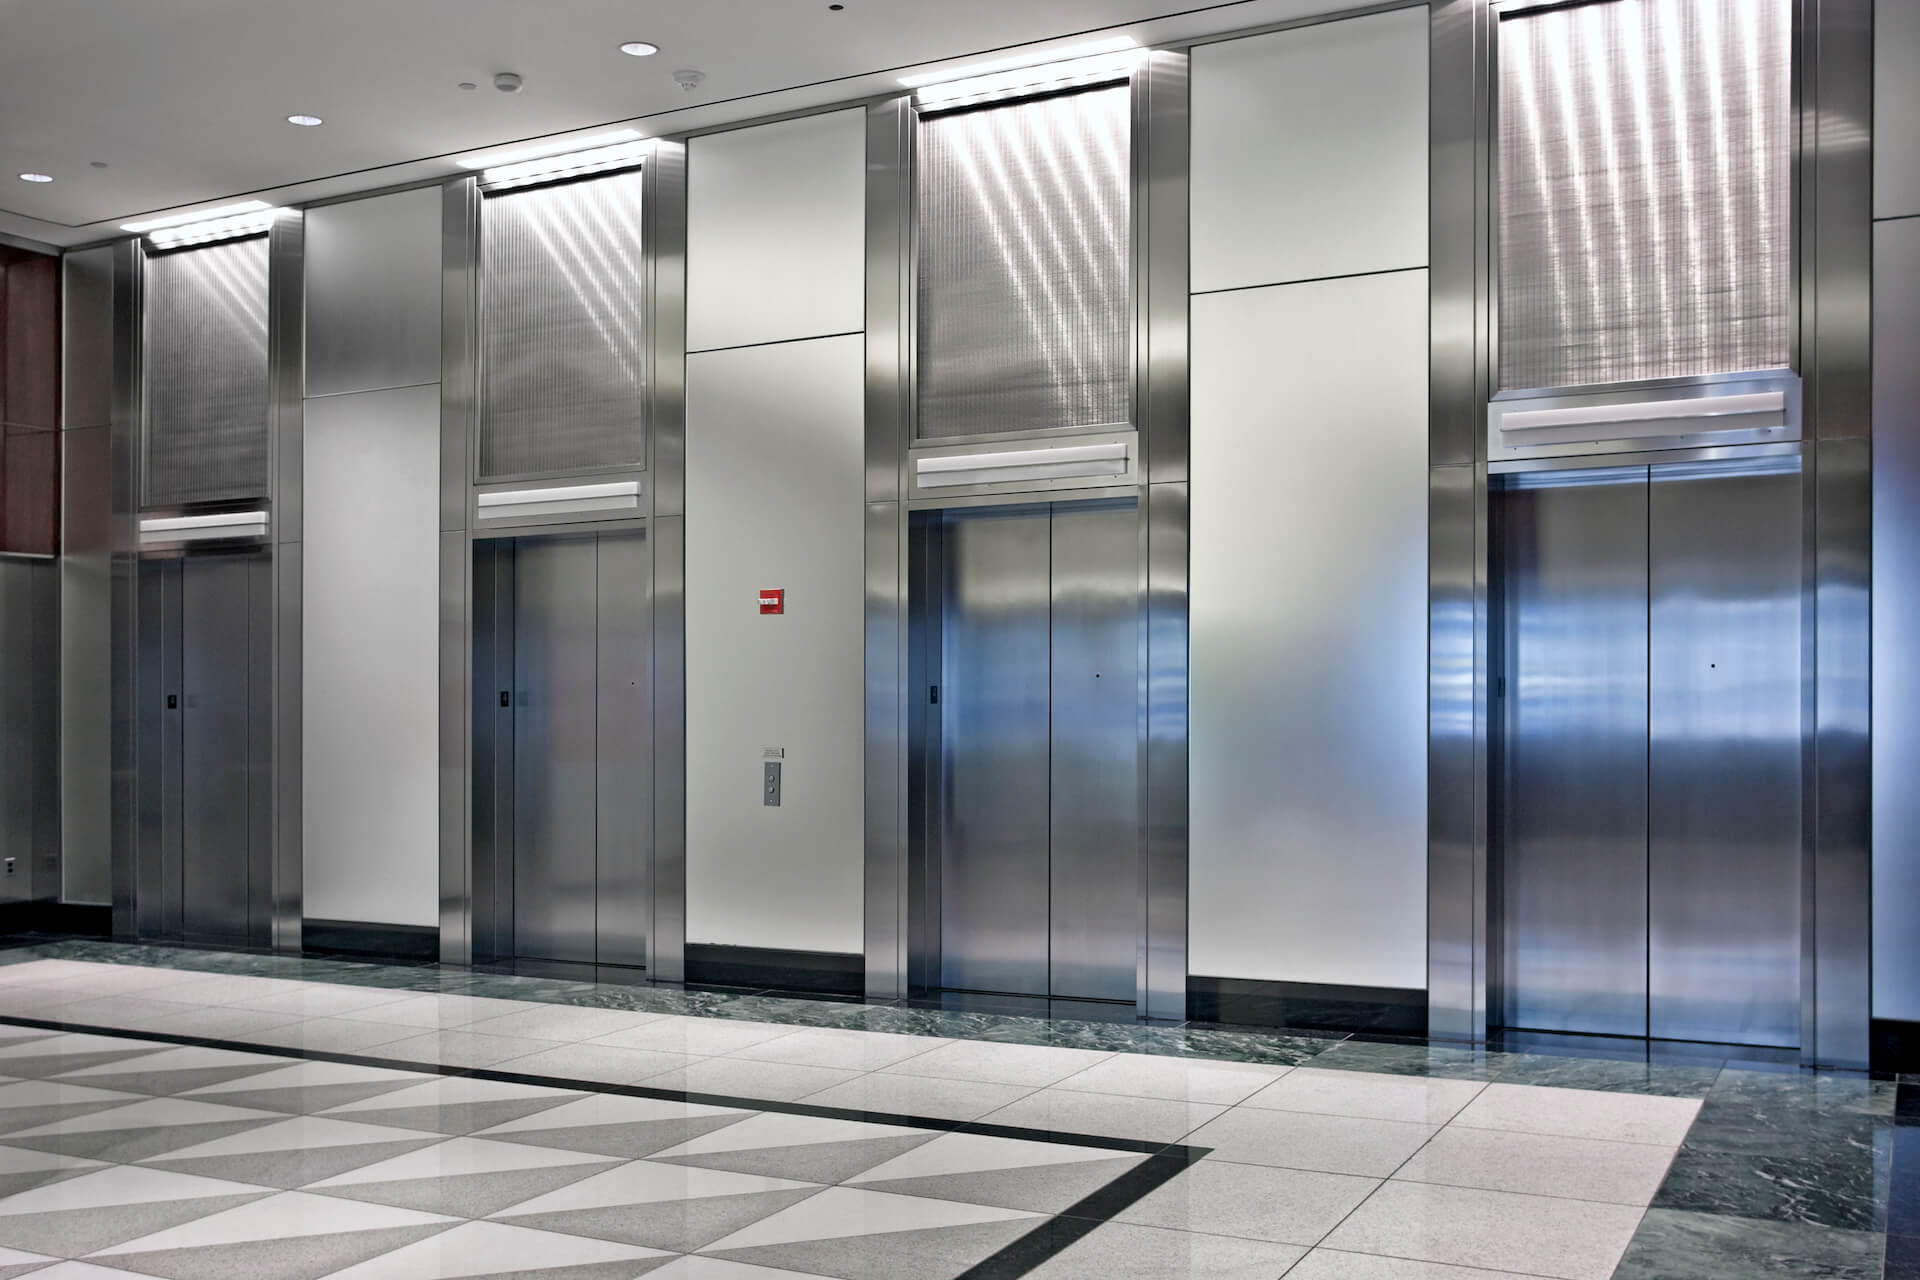 Dźwigi osobowe, znane również jako windy osobowe, prezentowane na zdjęciu, wyróżniają się nowoczesnym designem i zaawansowanymi funkcjami, idealne dla nowoczesnych budynków komercyjnych i mieszkalnych.